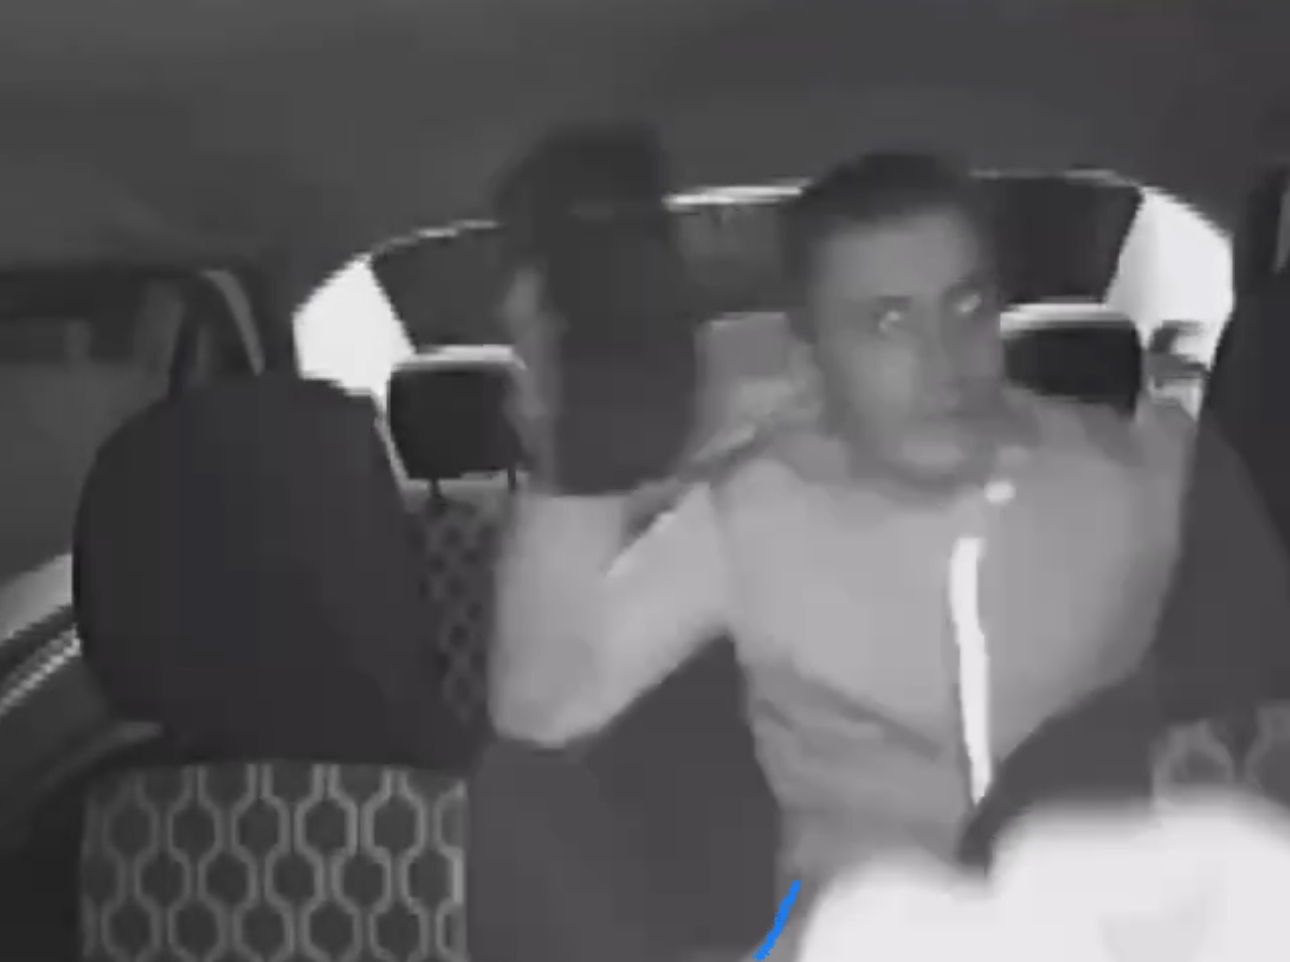 Türkiyədə taksiyə minən sərnişin sürücüyə daşla hücum edib – ANBAAN VİDEO